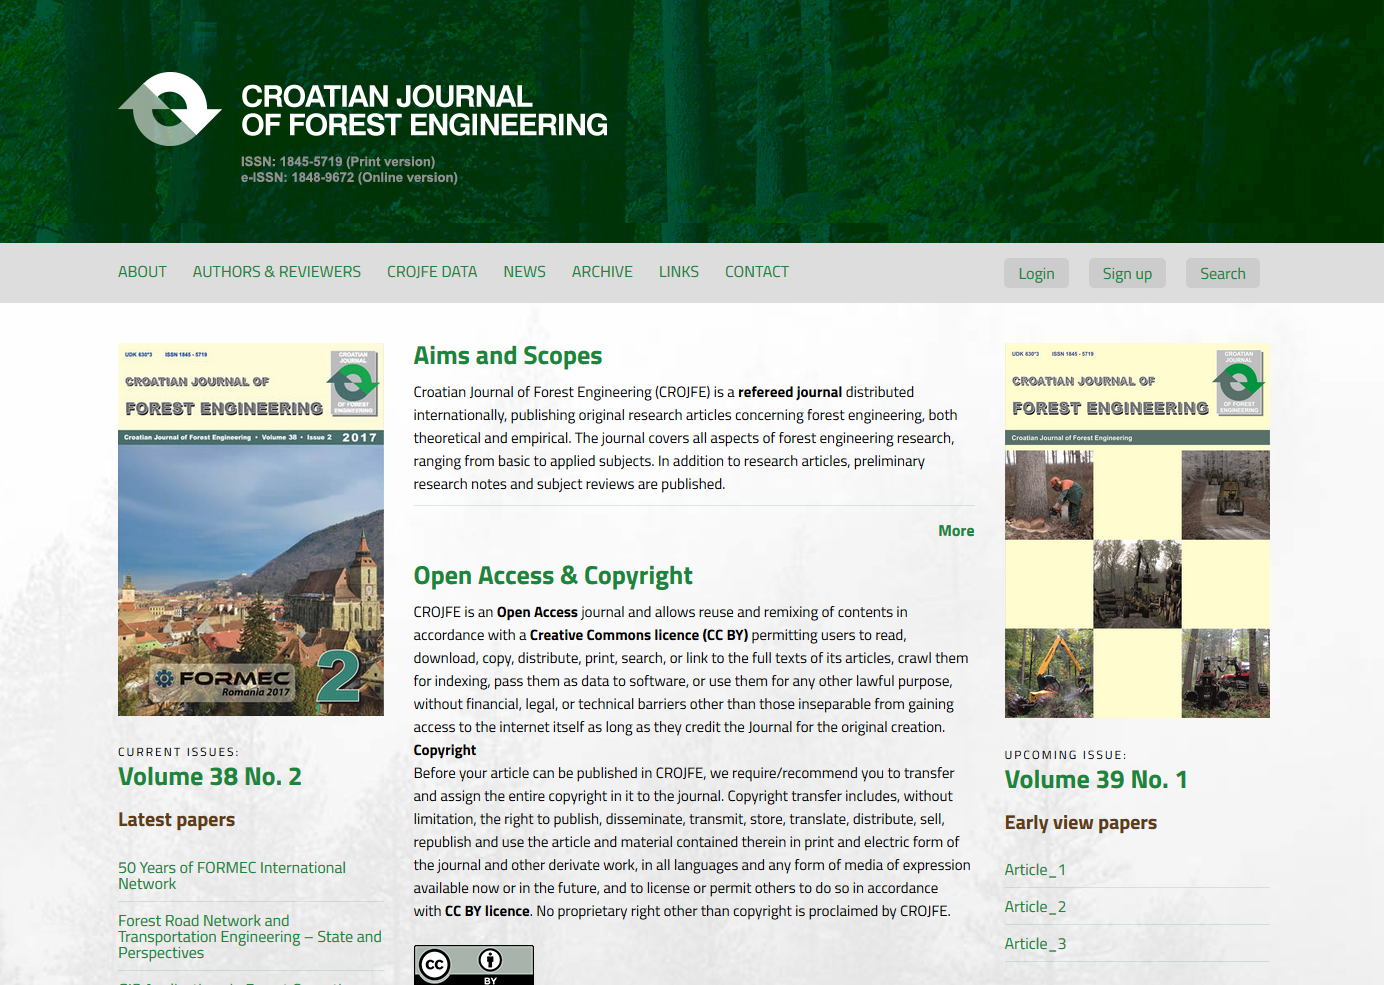 Gestaltung und Erstellung der Webseite - CROJFE - Das Kroatische Magazin für Forsttechnologie der Fakultät für Forstwissenschaften - BERNARDIĆ STUDIO